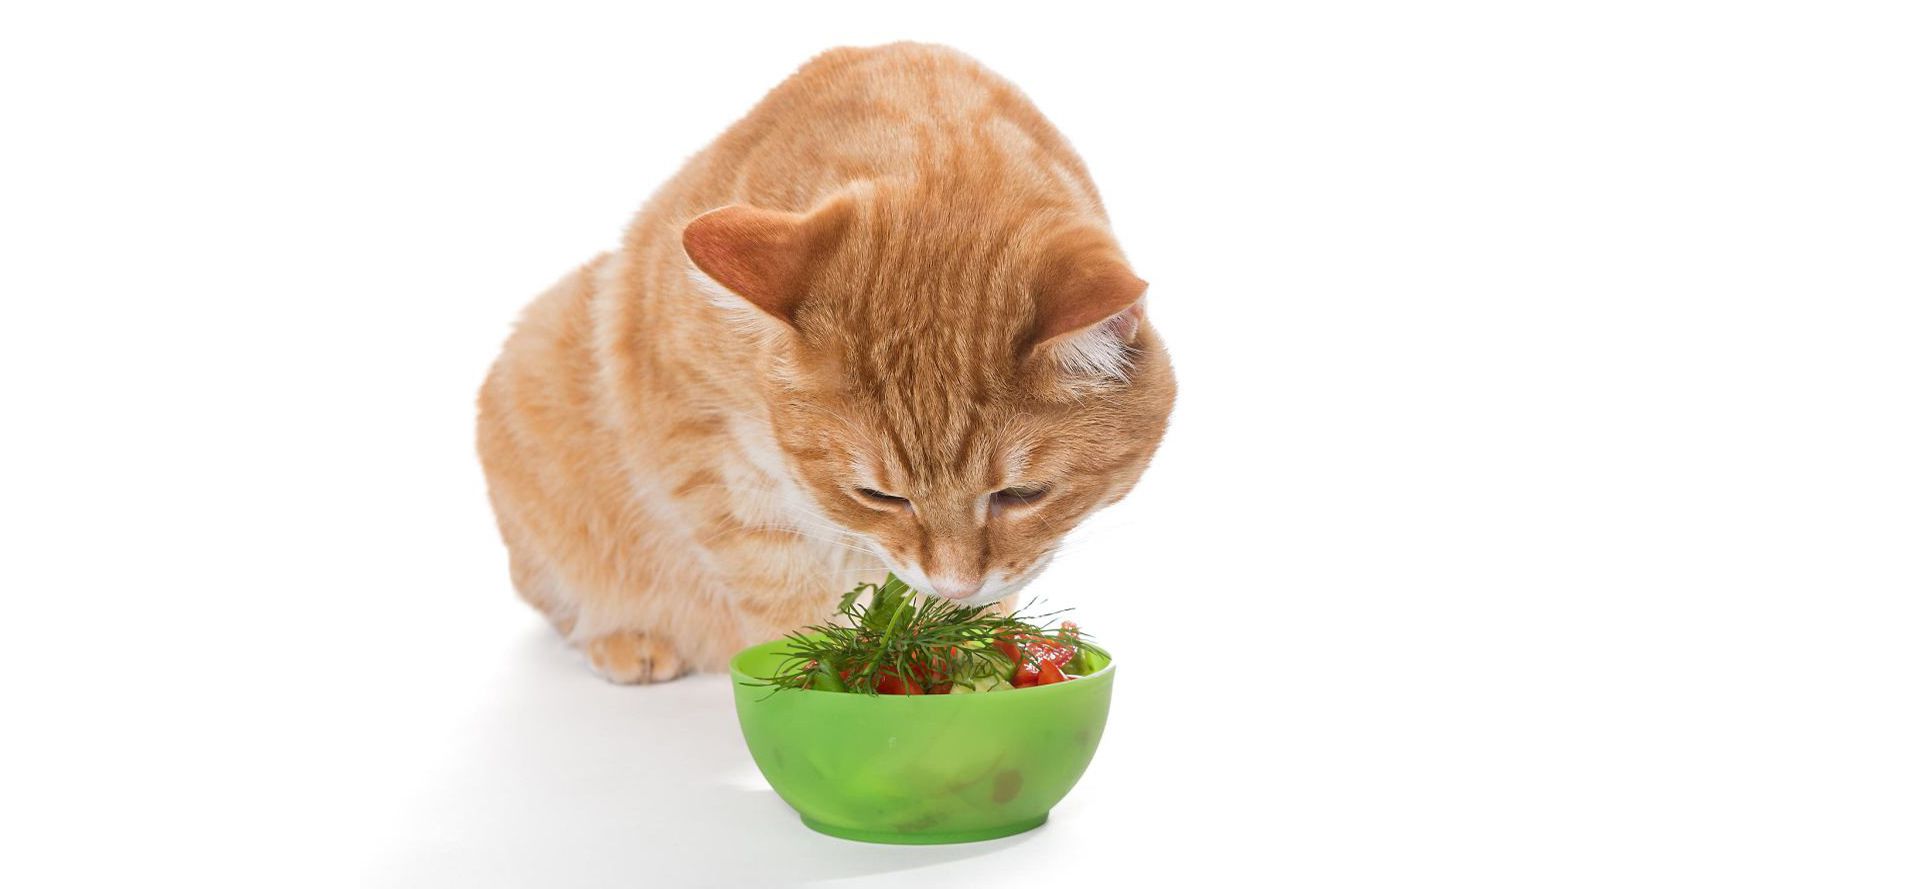 Cat Eats Vegetables.